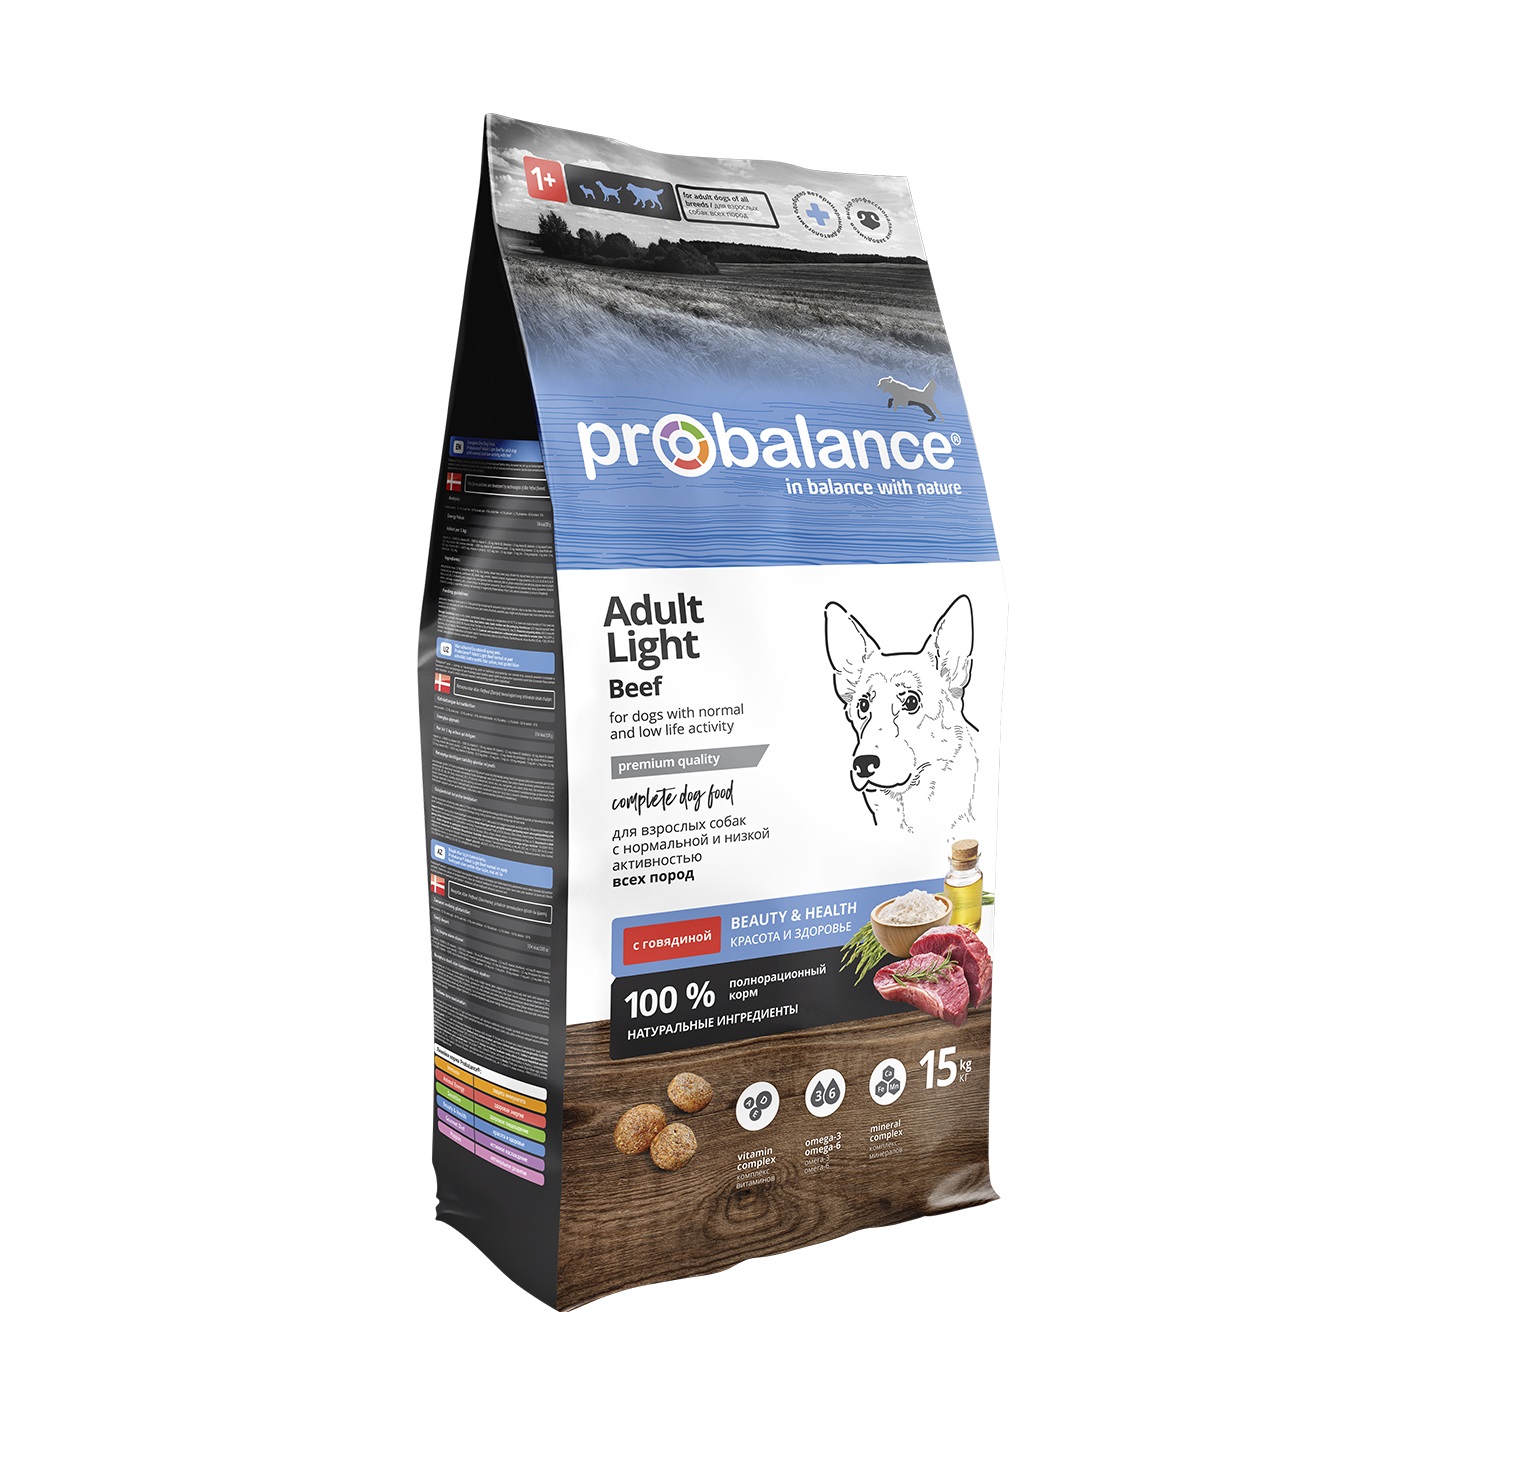 ПроБаланс 15кг для собак Лайт Говядина низкокалорийный (ProBalance) + Подарок